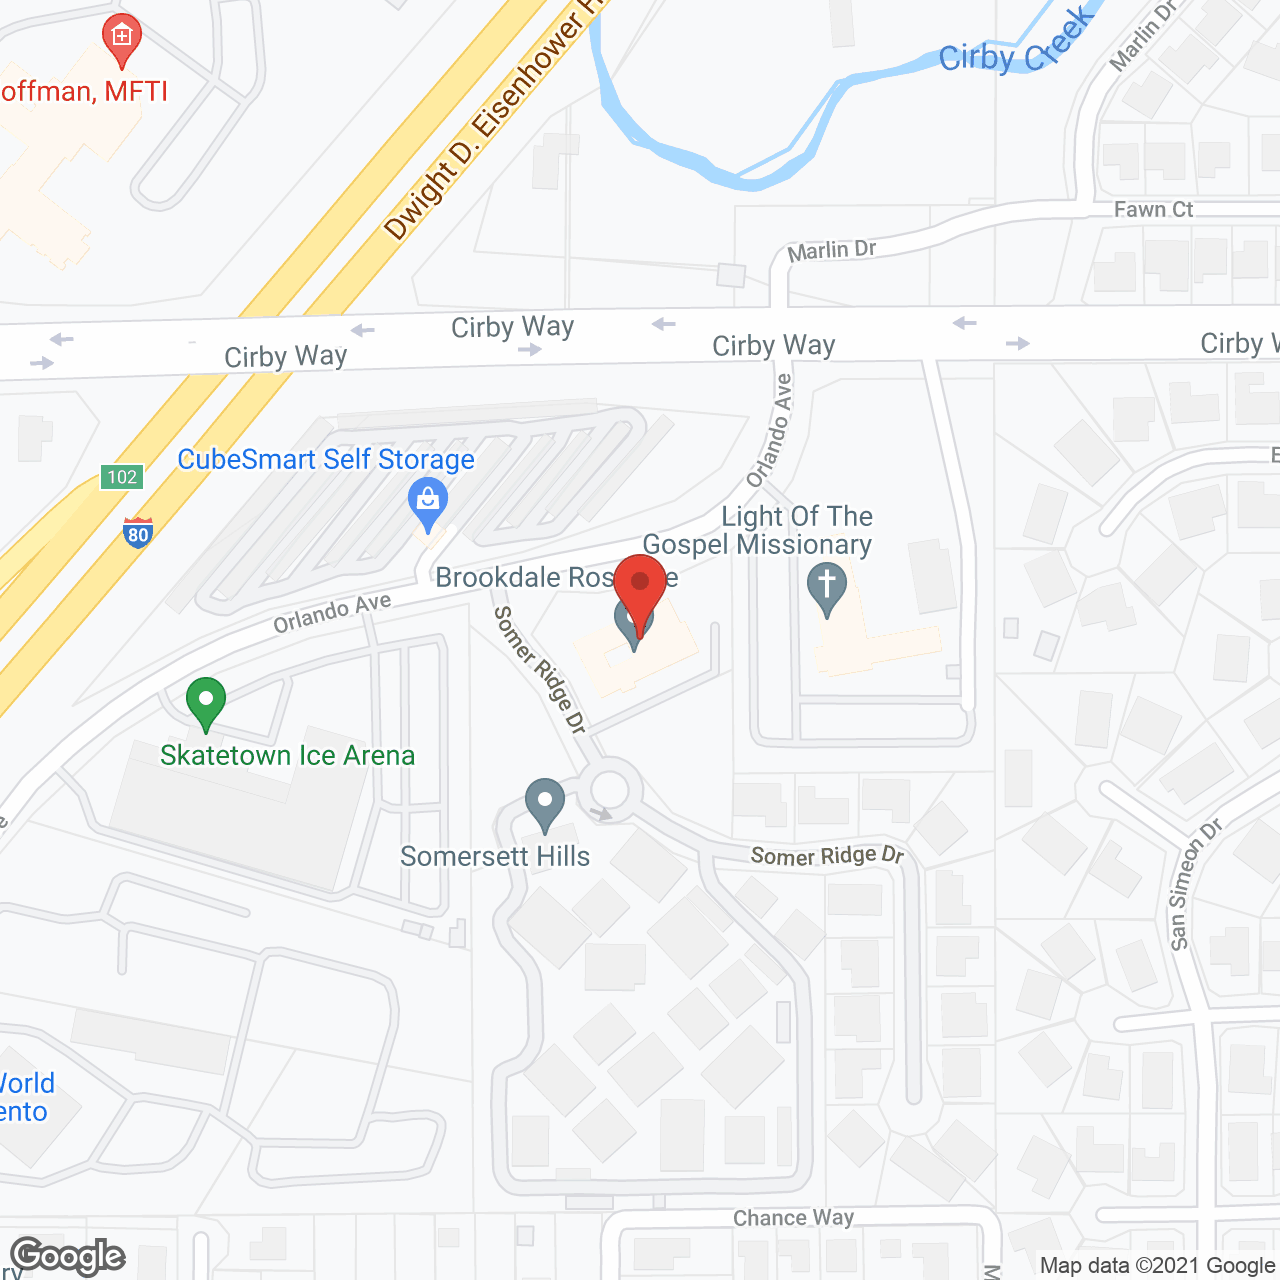 Brookdale Roseville in google map